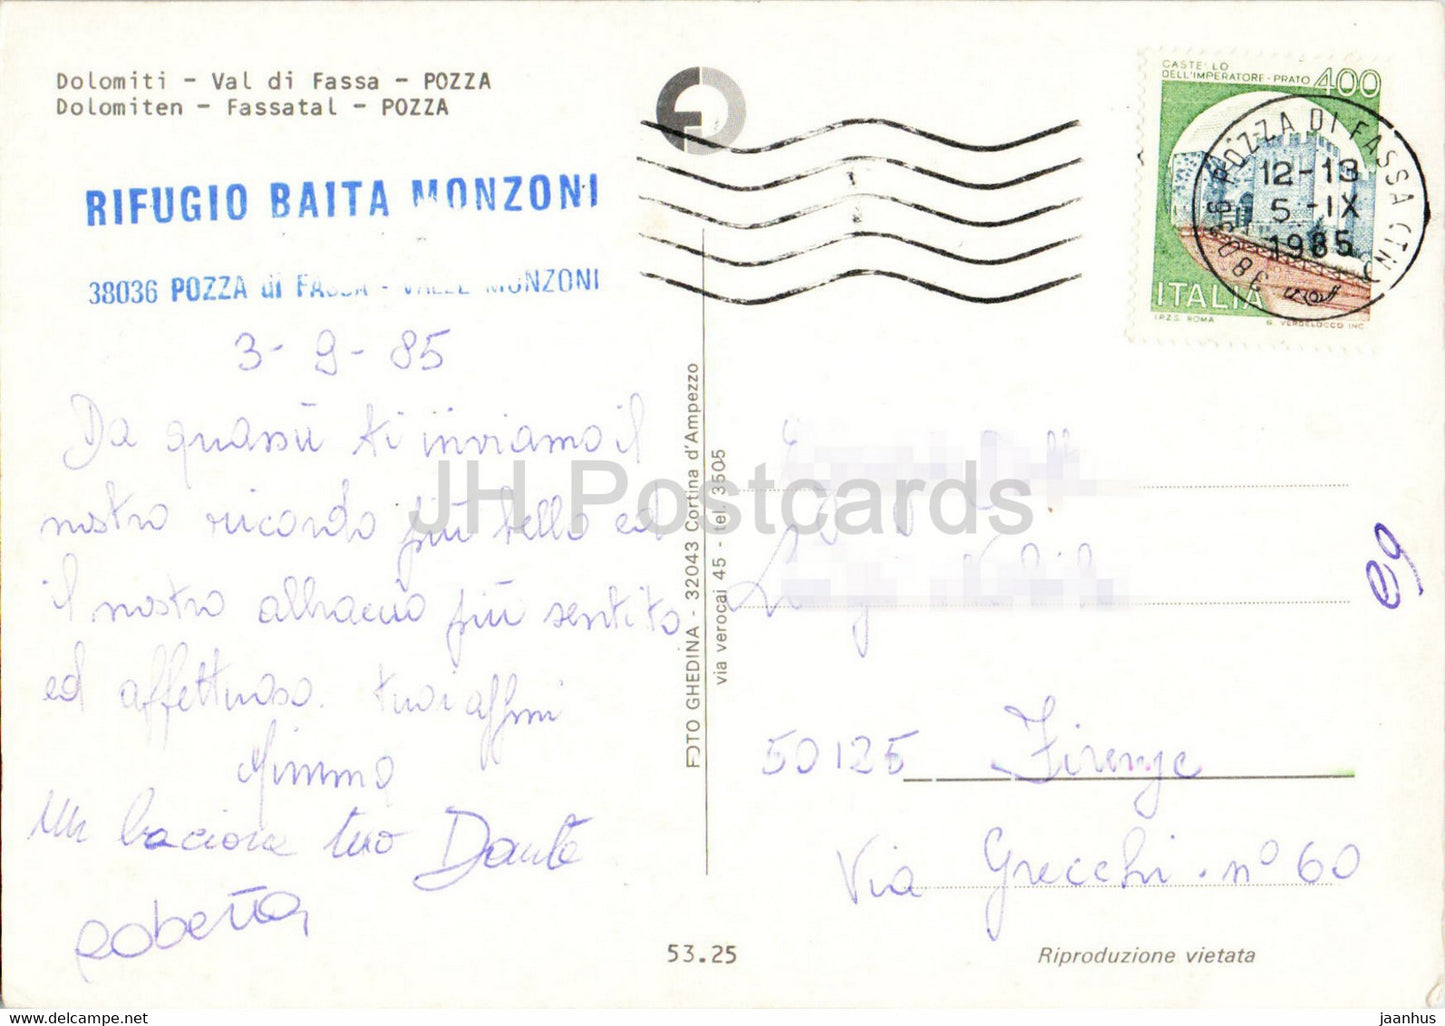 Pozza – Val di Fassa – Dolomiti – Auto – 1985 – Italien – gebraucht